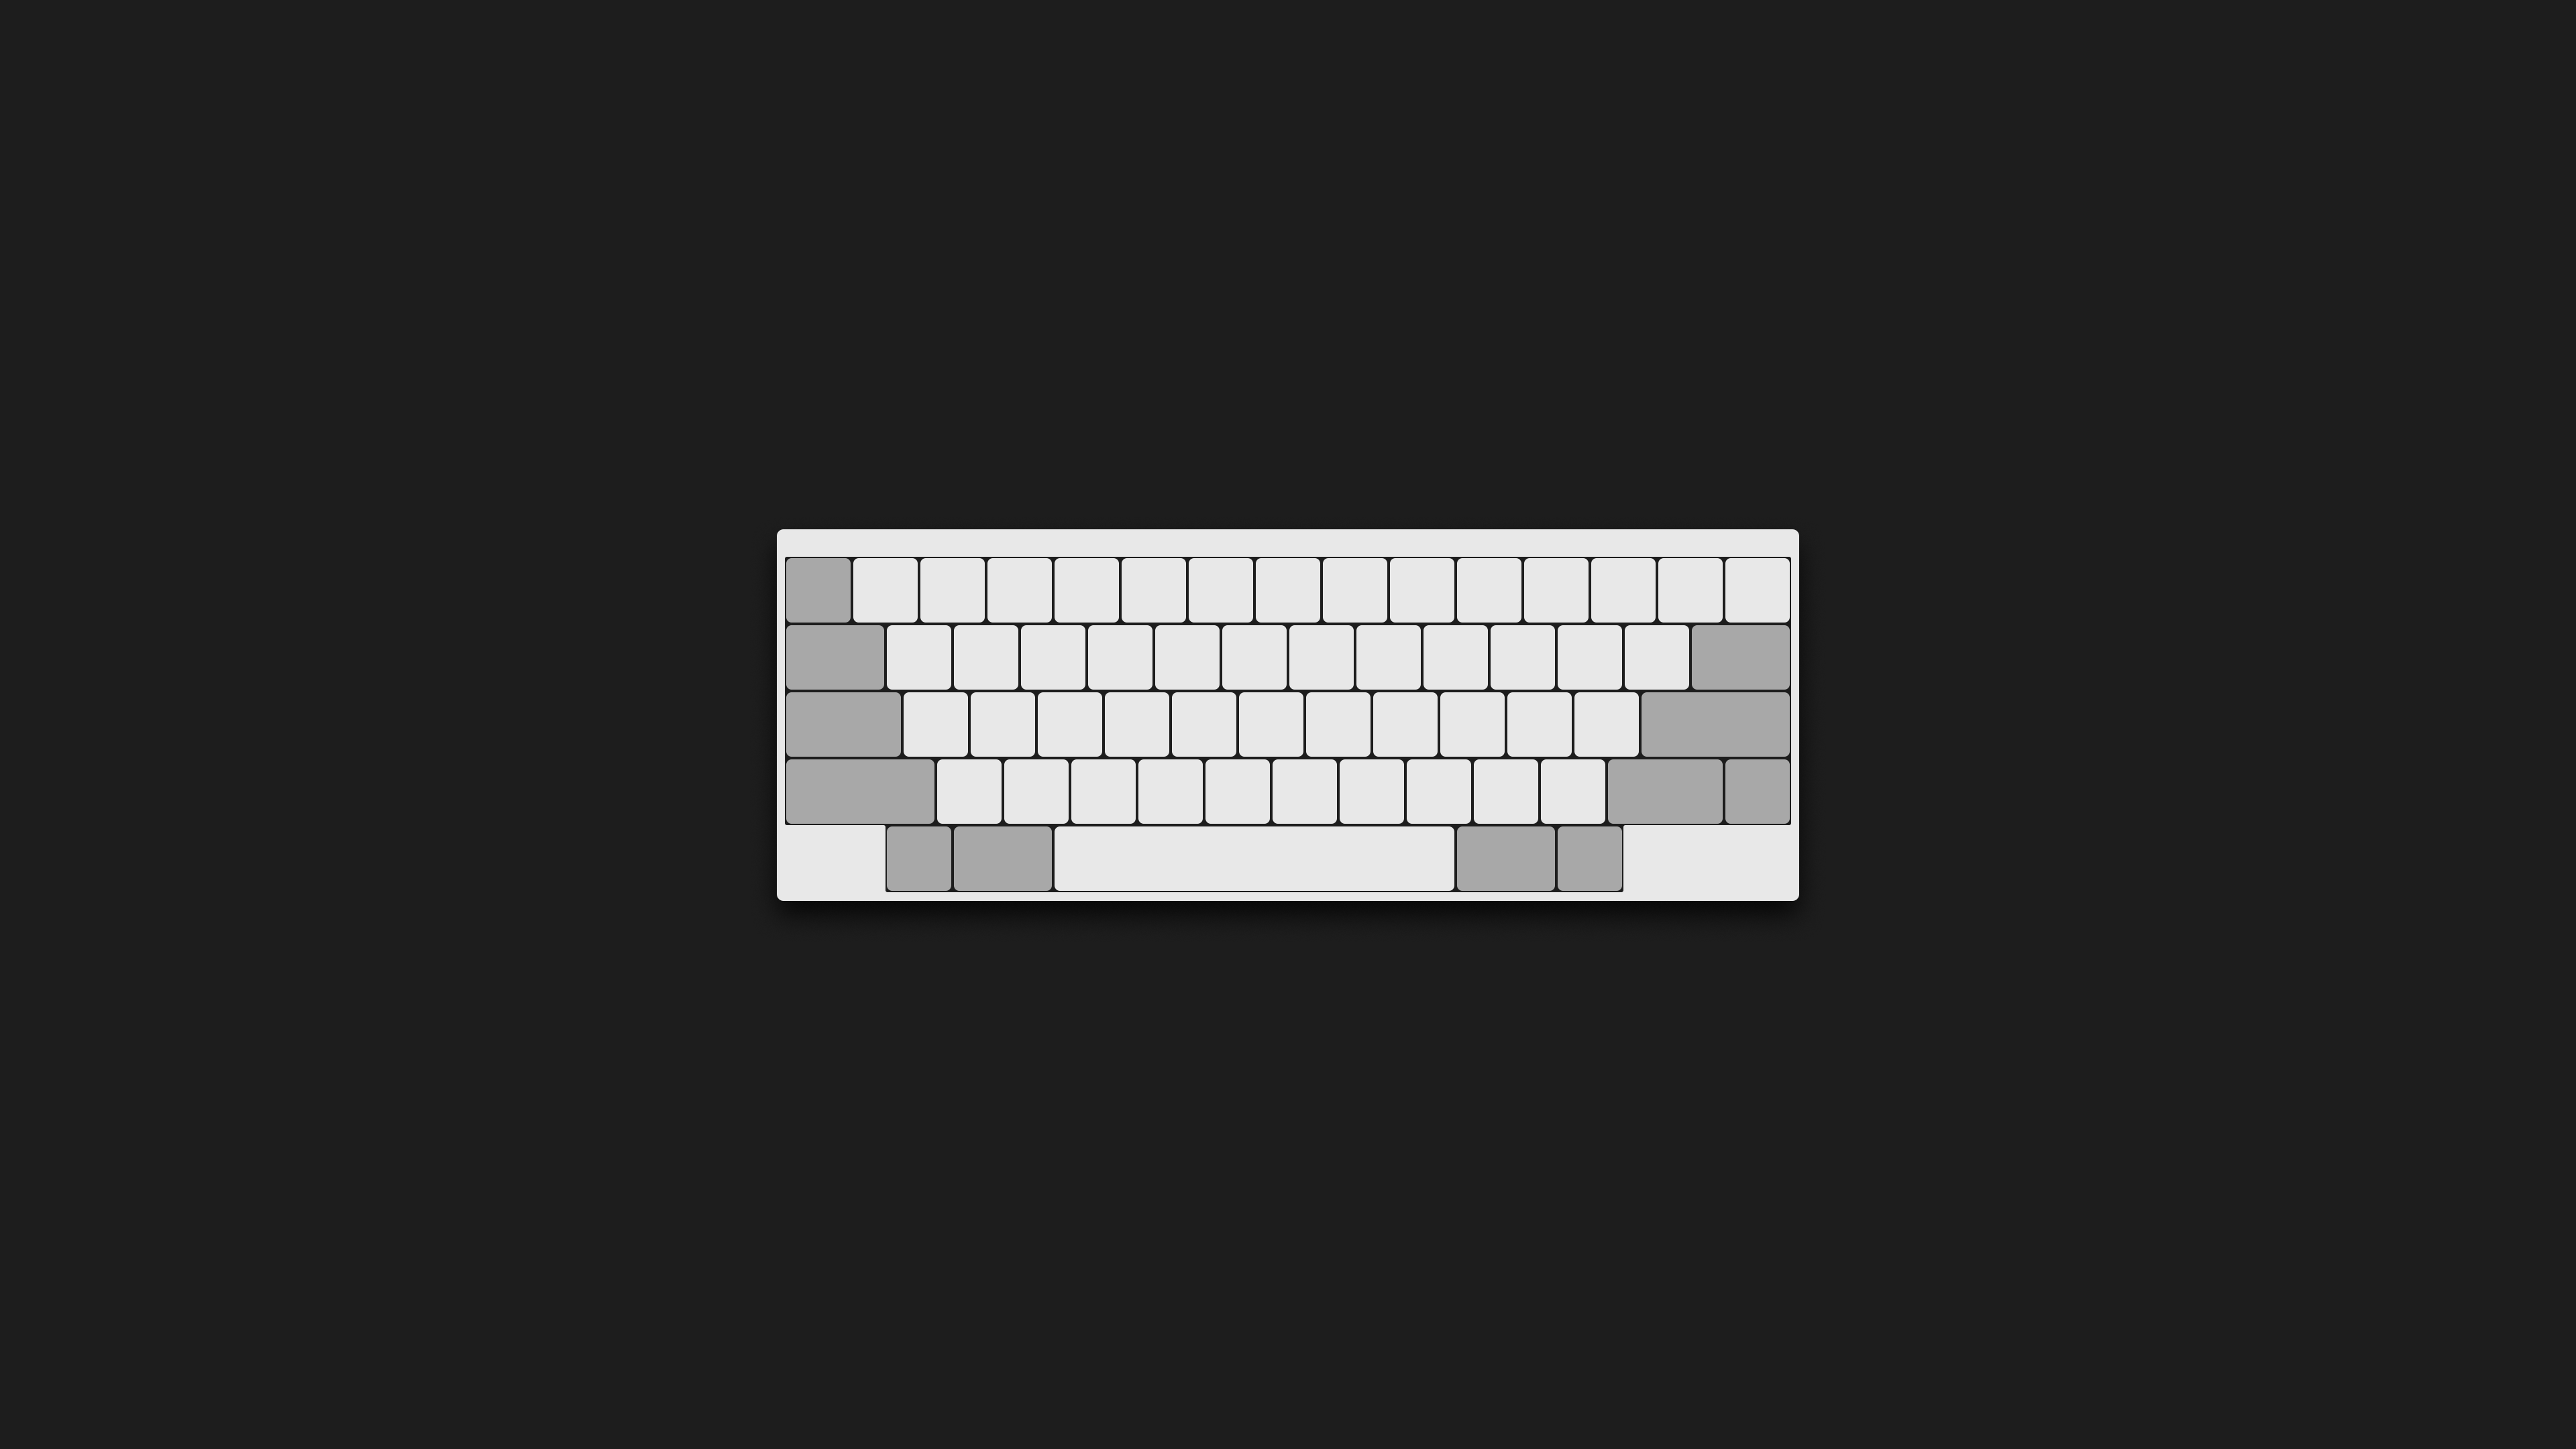 Minimal keyboard wallpaper